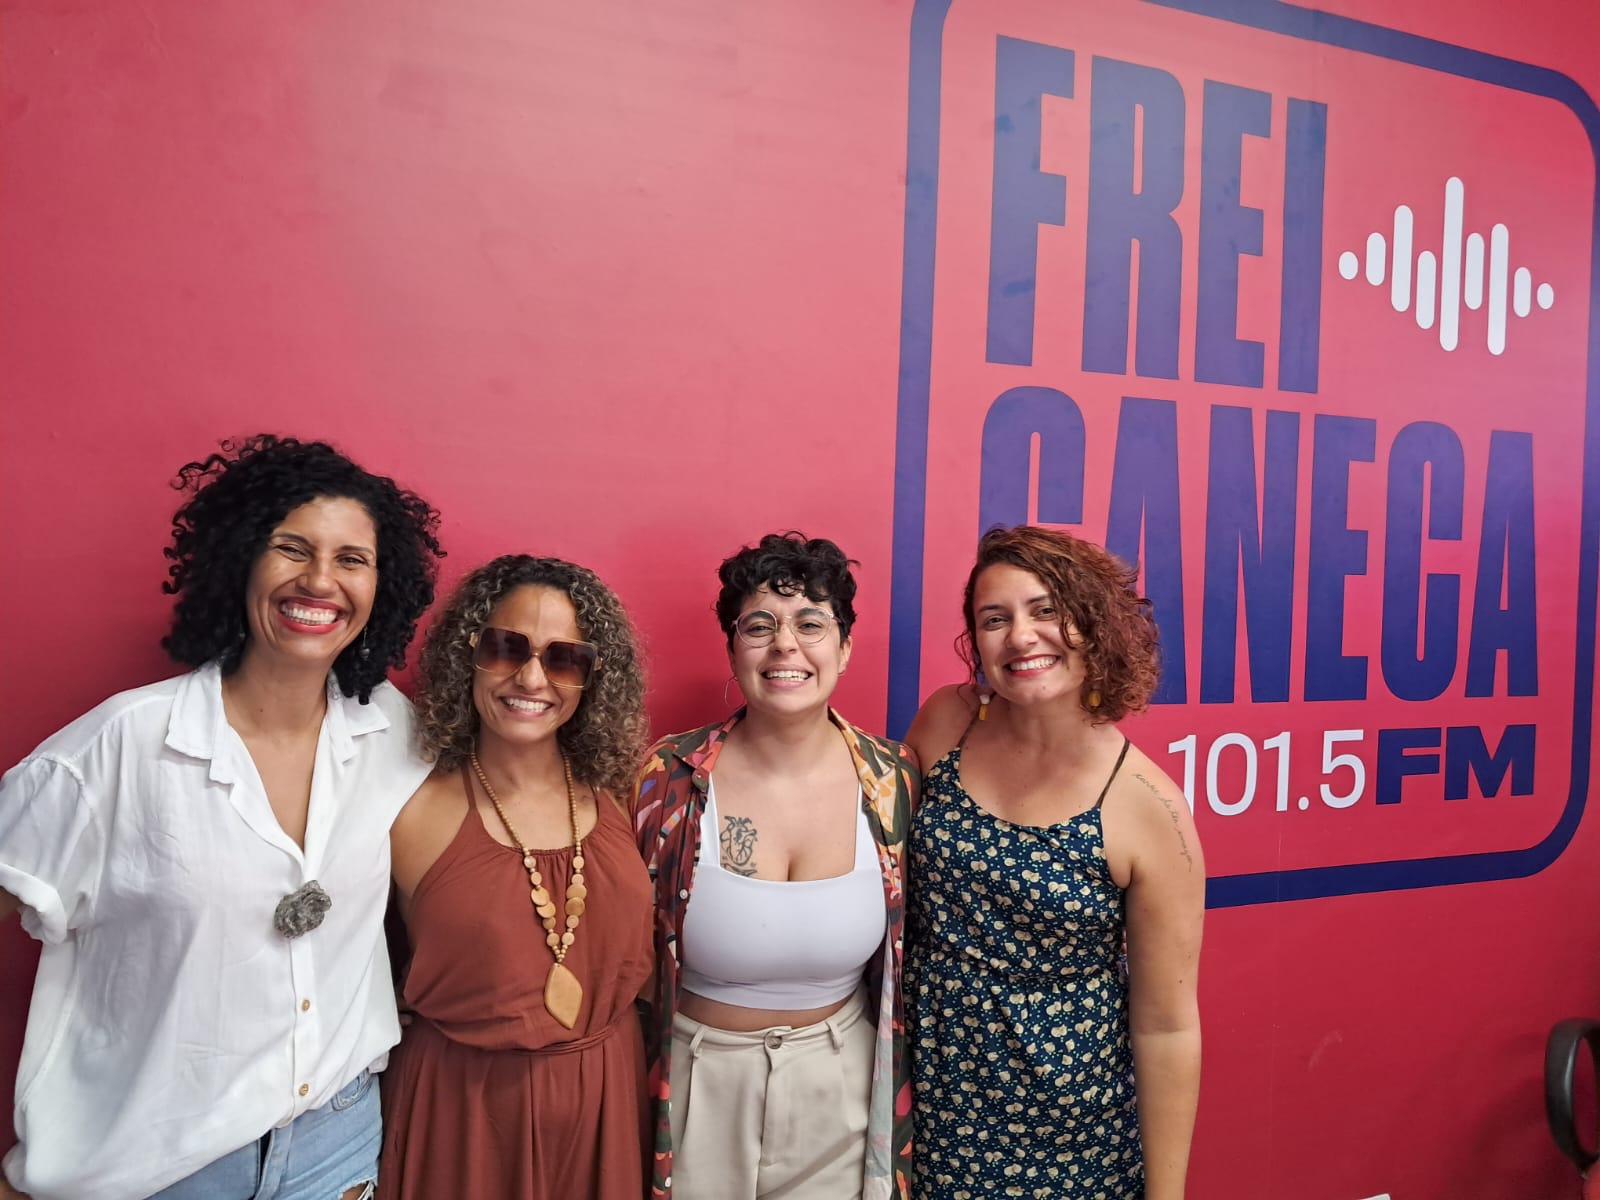 Janaína Serra, Priscila Xavier, Gabriele Alves e Luizy Silva comemoram os 5 anos do TPM - Tempo Pra Mim dando início as celebrações do Mês da Mulher na rádio pública do Recife